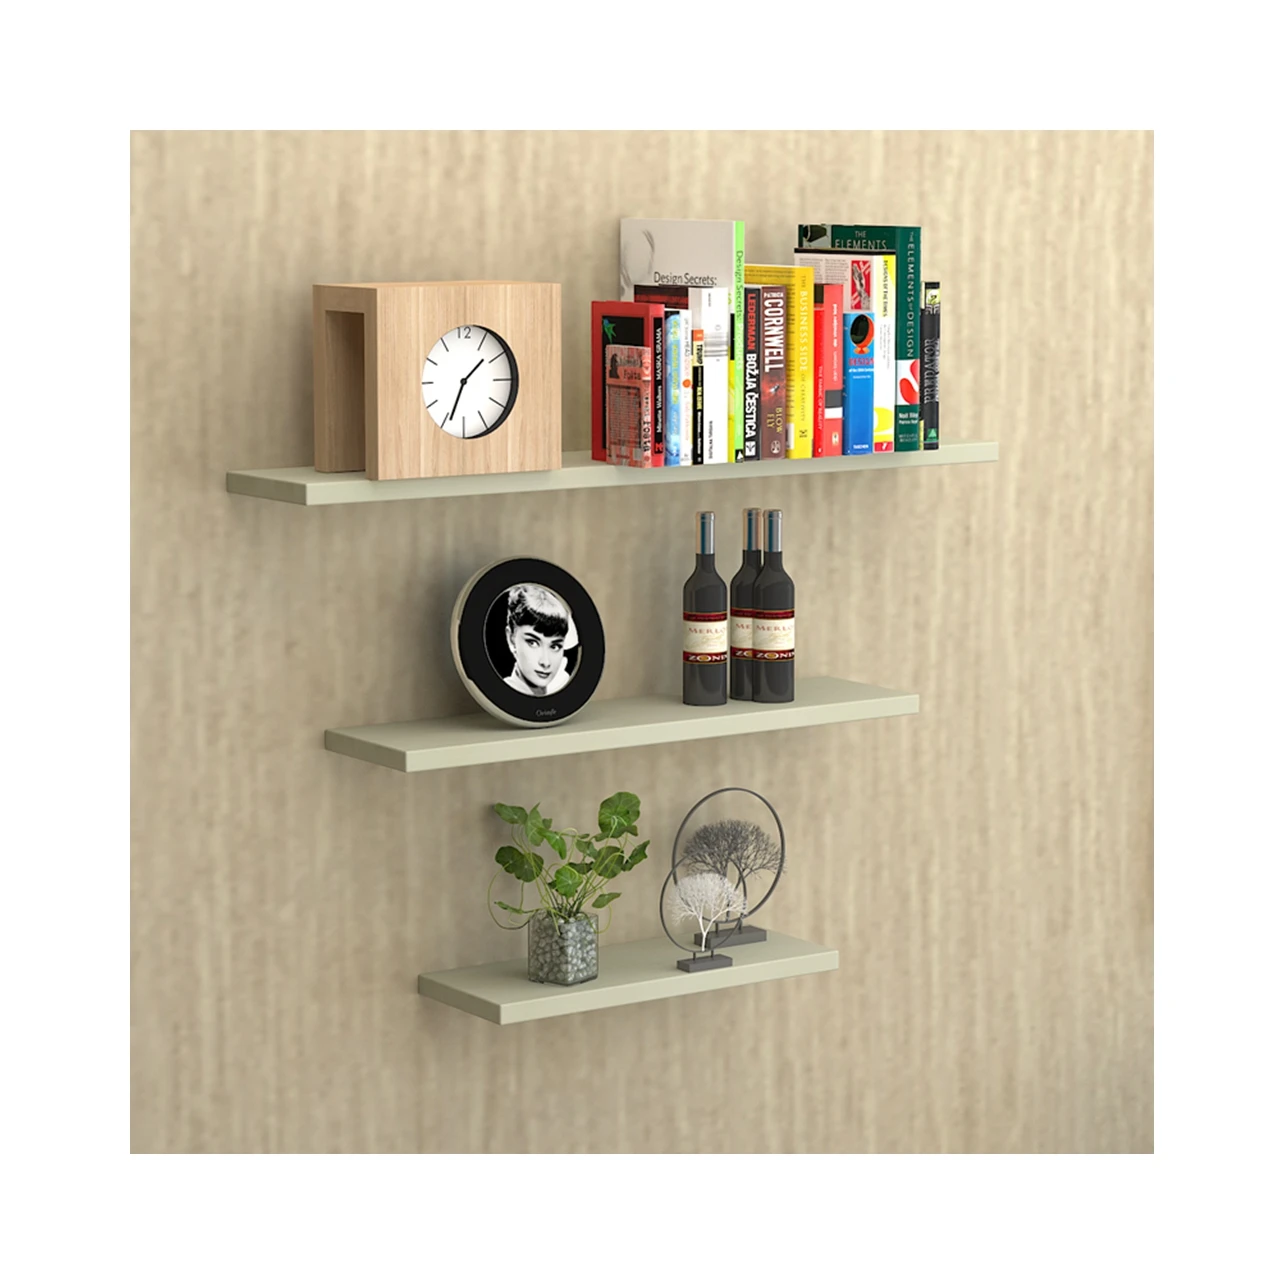 1 3 Floating Wooden Wall Mount Shelves Display Unit MDF Shelf Set Book Storage 